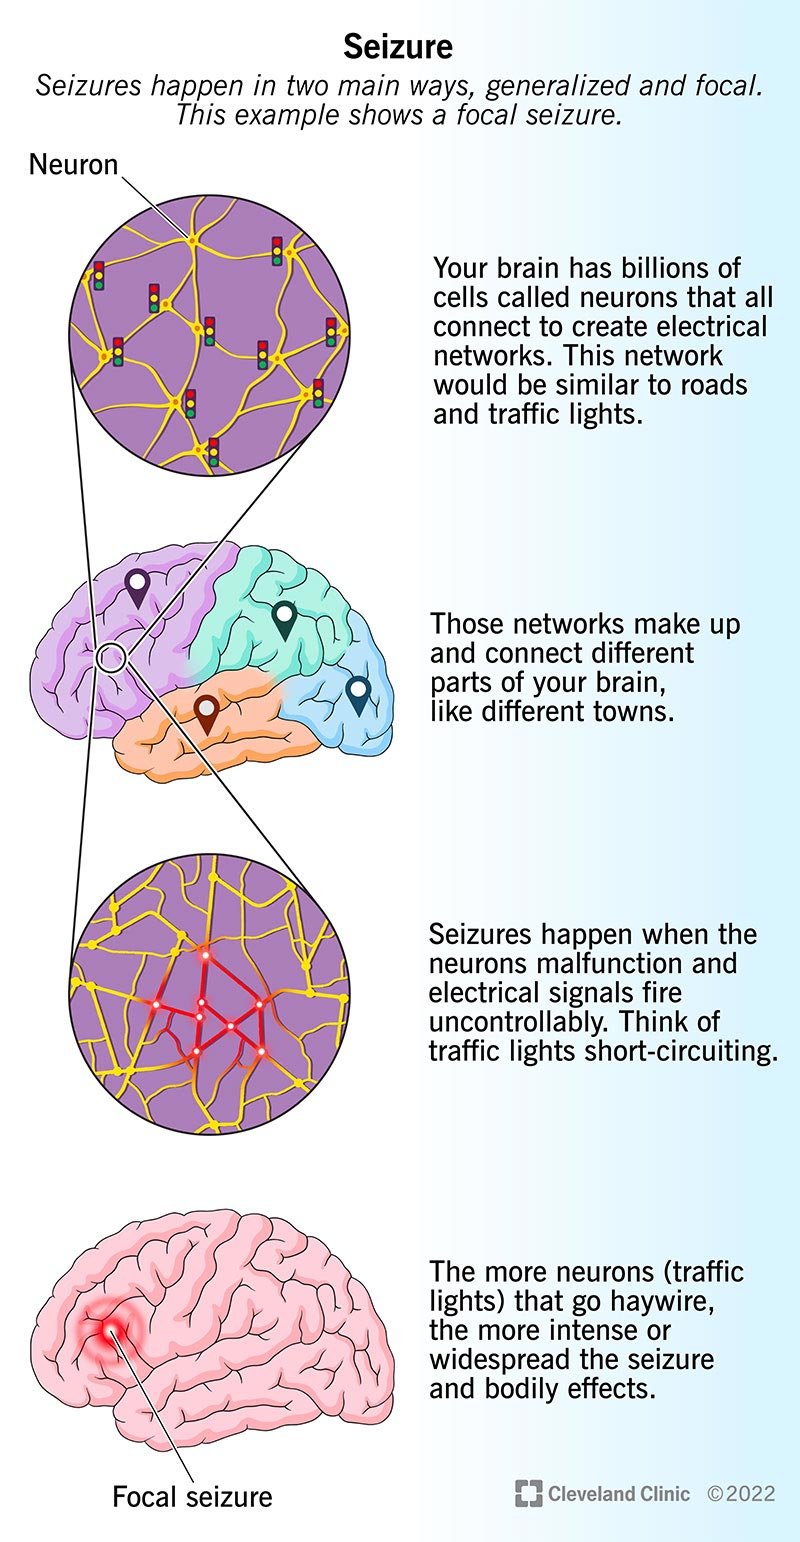 Teie aju koosneb neuronite võrkudest, mis saadavad ja edastavad elektrilisi signaale.  Krambid häirivad nende signaalide voogu.